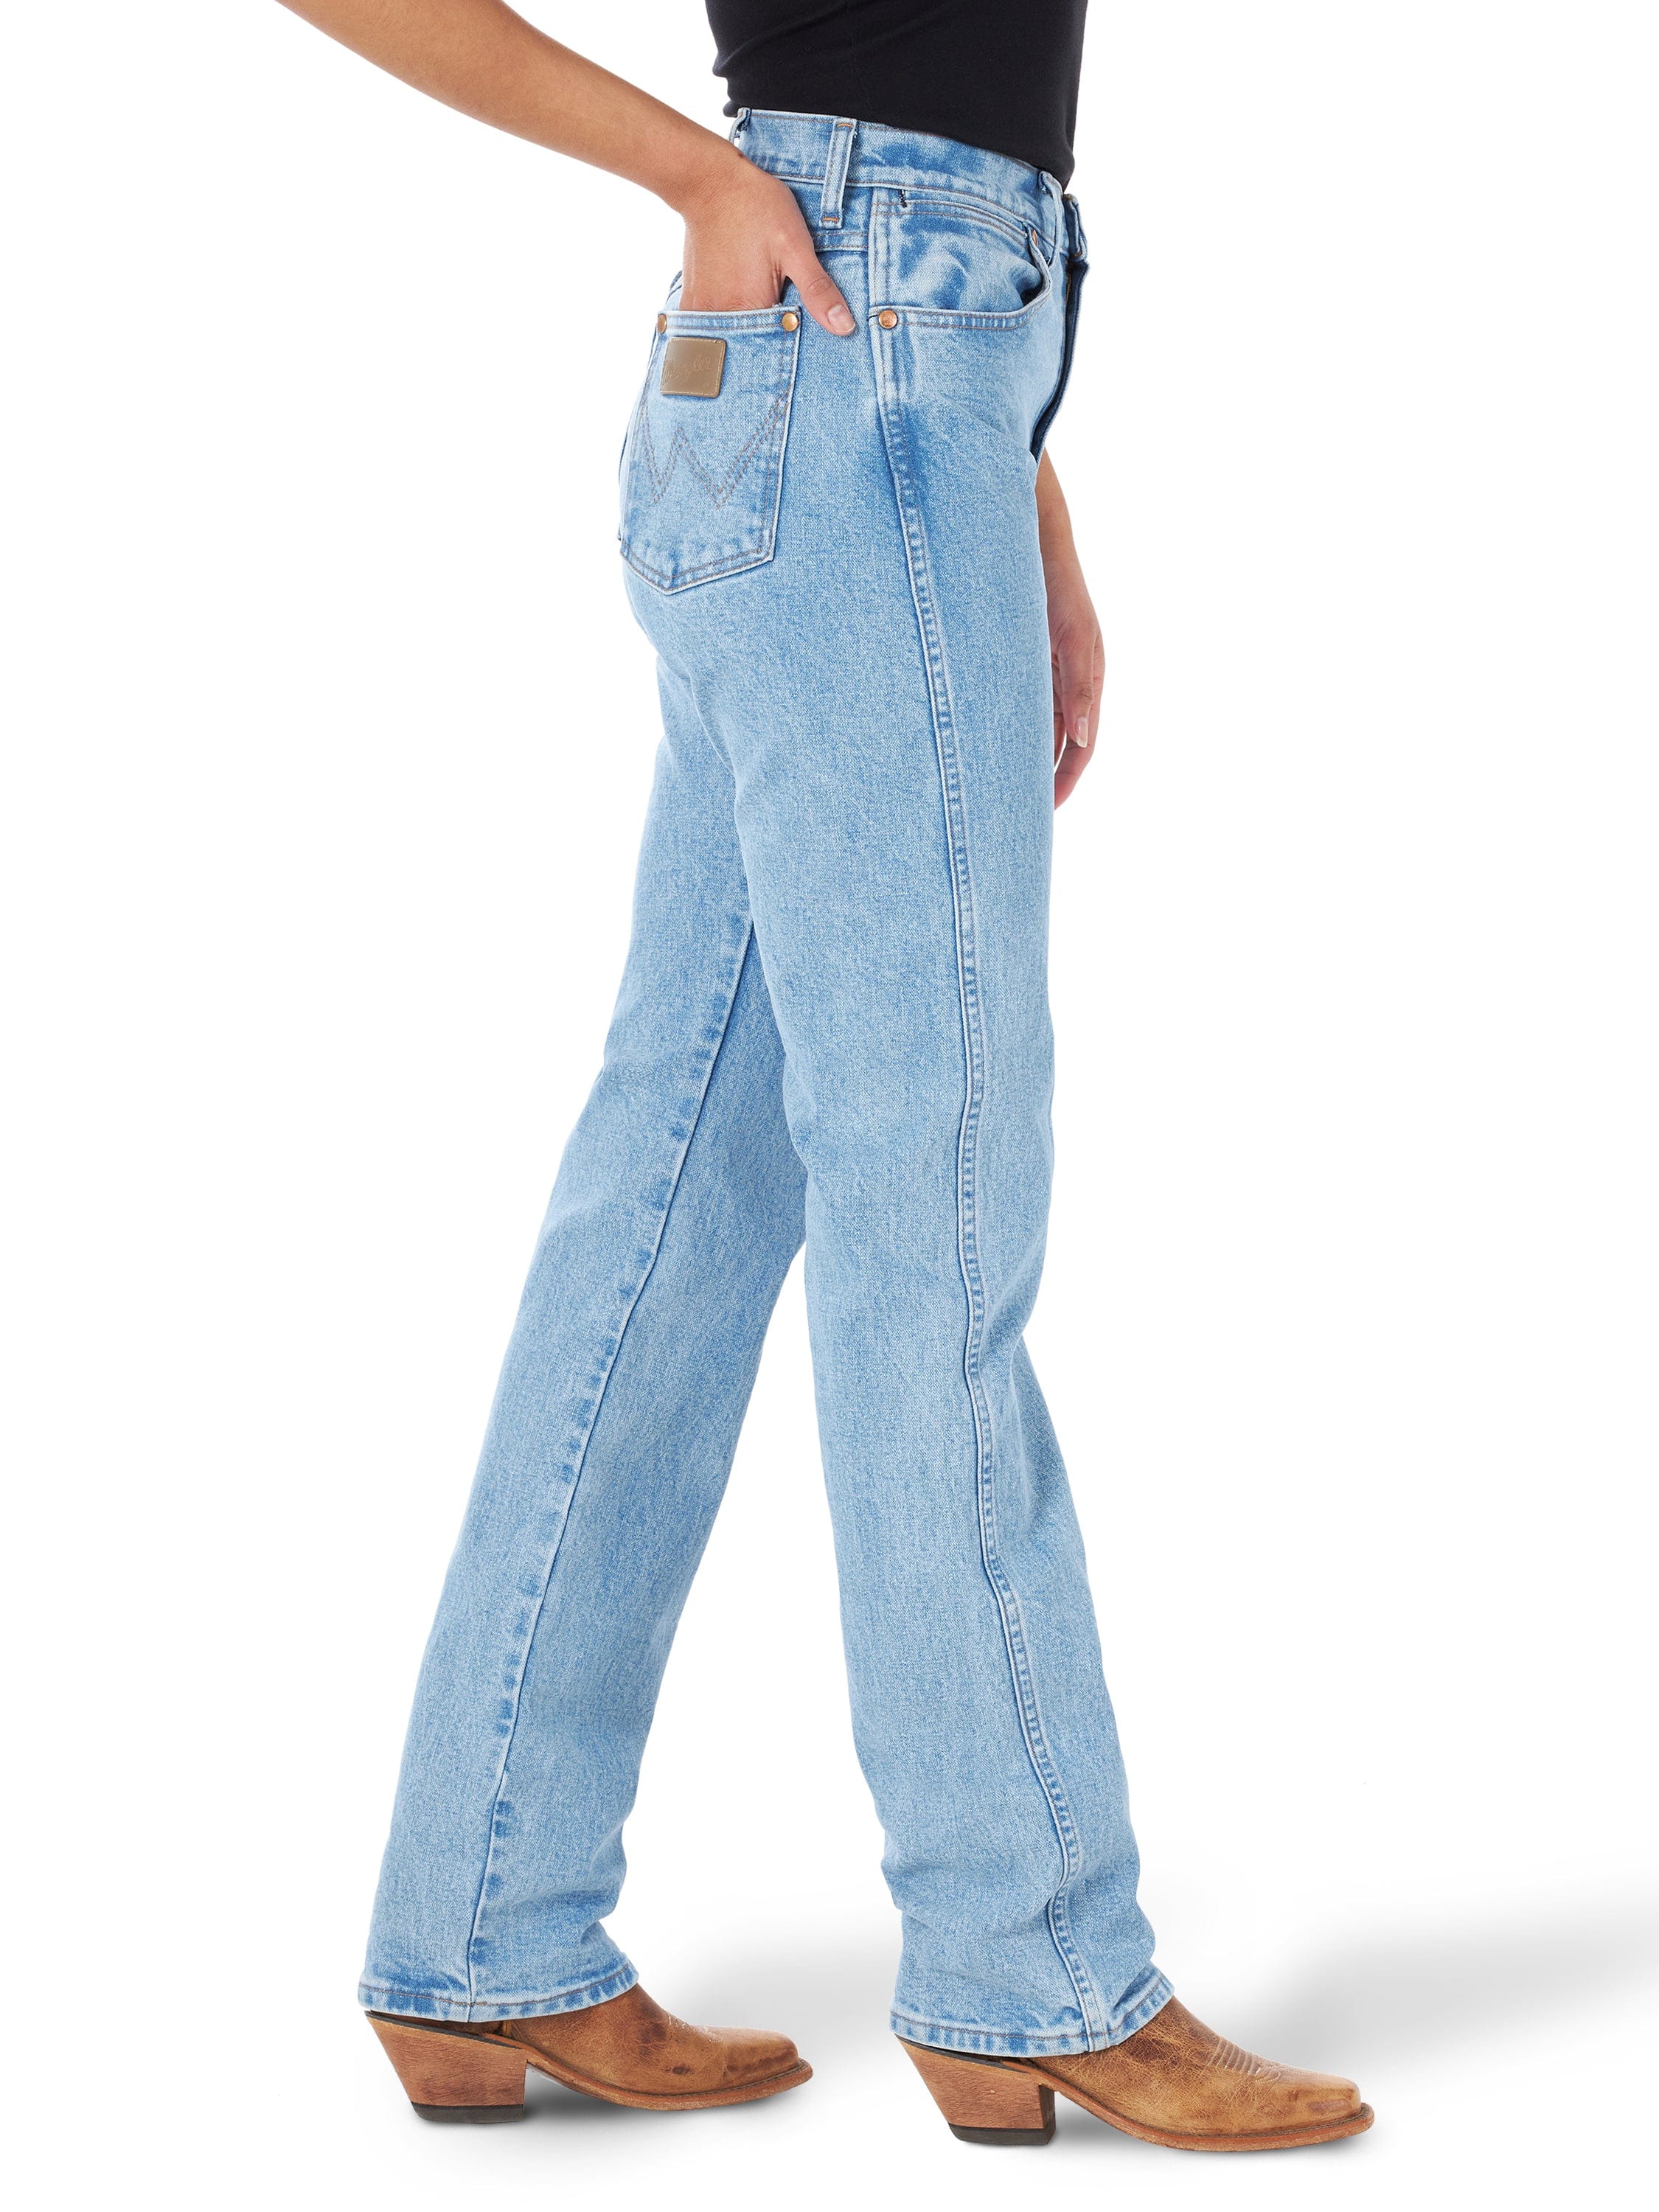 Vintage wrangler jeans 33 - Gem